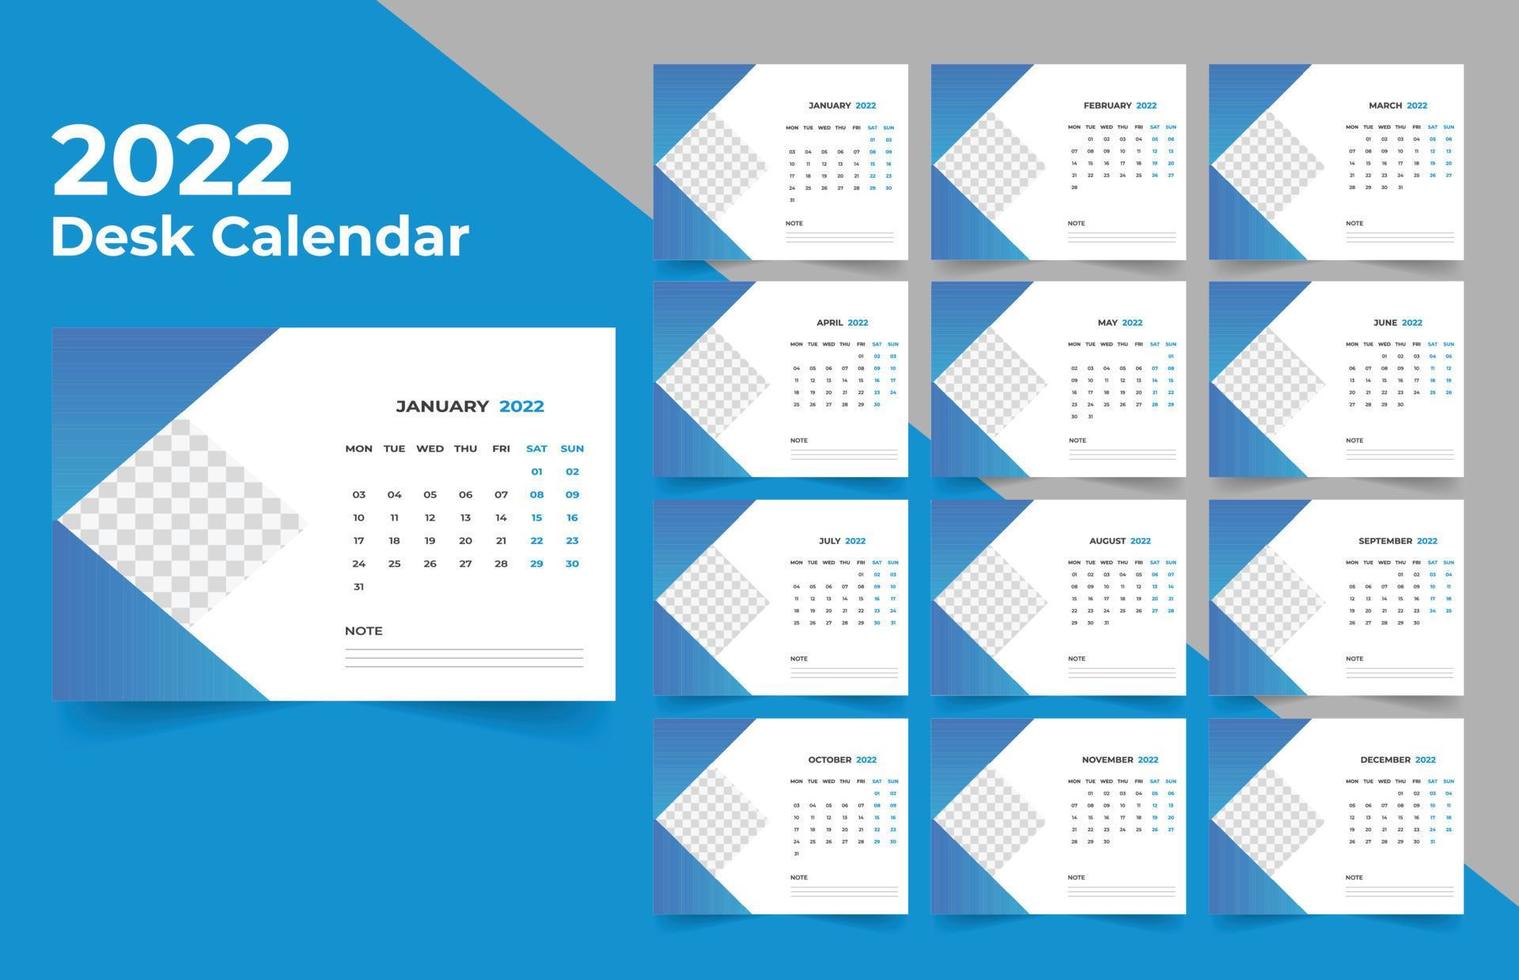 diseño de calendario de escritorio 2022. La semana comienza el lunes. plantilla para calendario anual 2022 vector